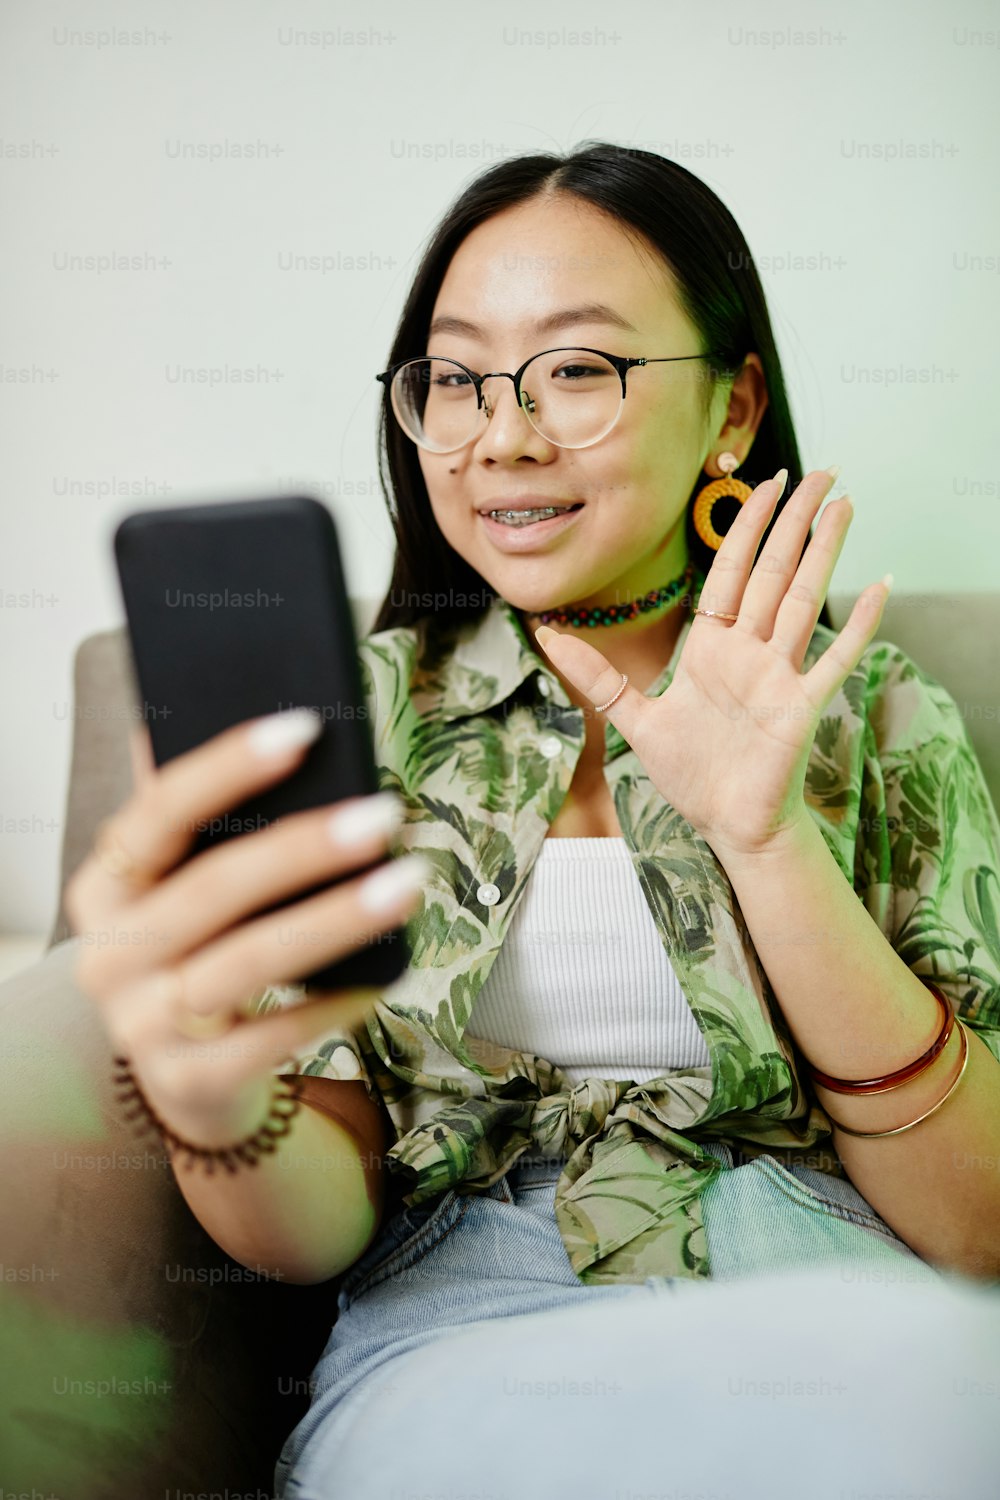 스마트폰에서 손을 흔드는 아시아 십대 소녀의 세로 초상화는 네온 불빛으로 밝혀진 친구와 영상 채팅을 하는 동안 나왔다